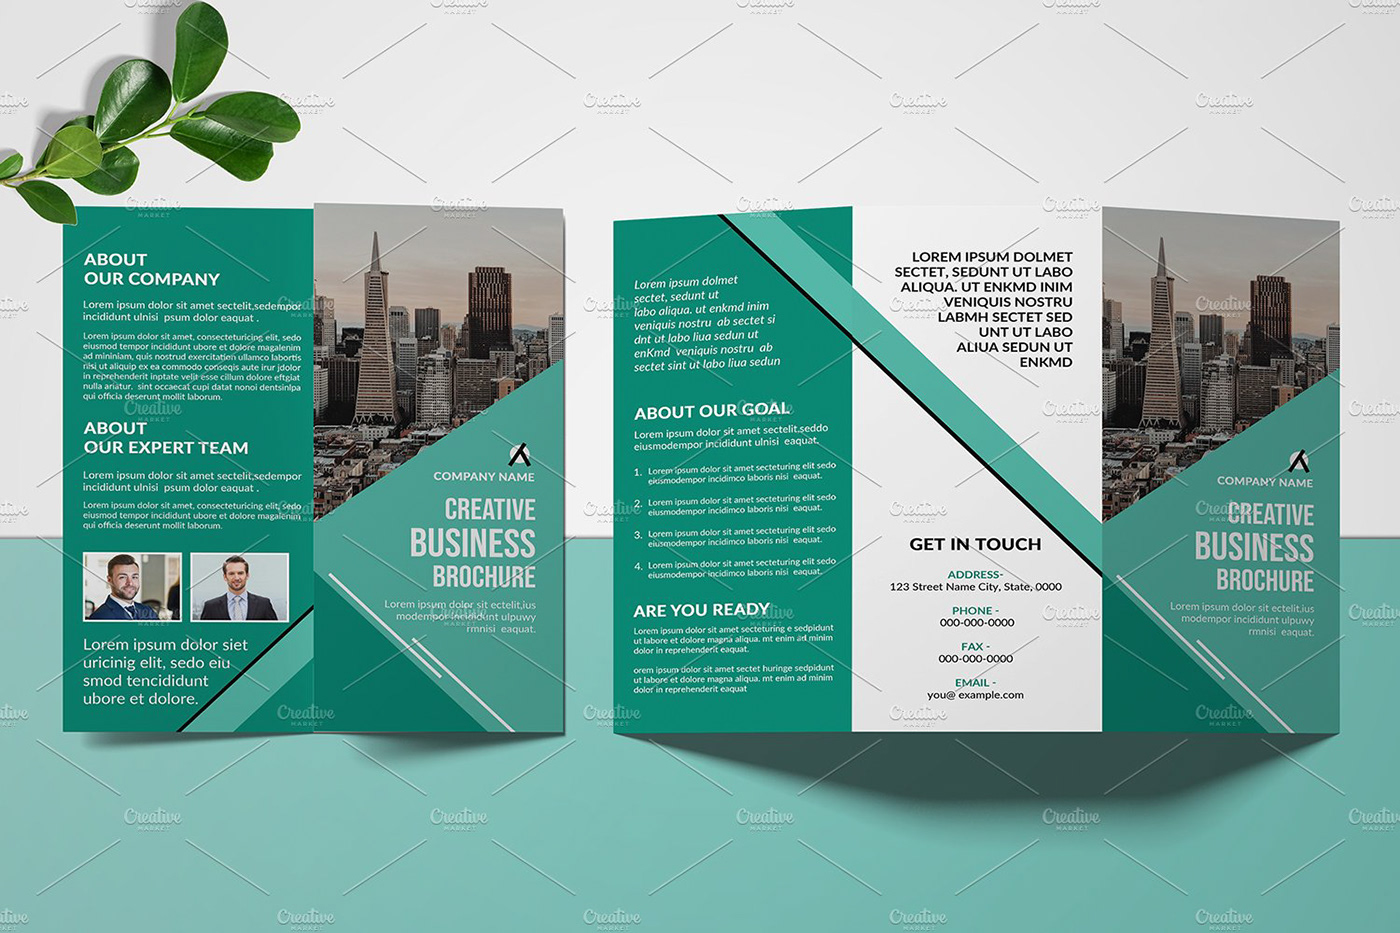 Company Brochure Corporate Brochure creative minimal Multipurpose photoshop template profile Proposal trifold brochure Trifold Business Brochure